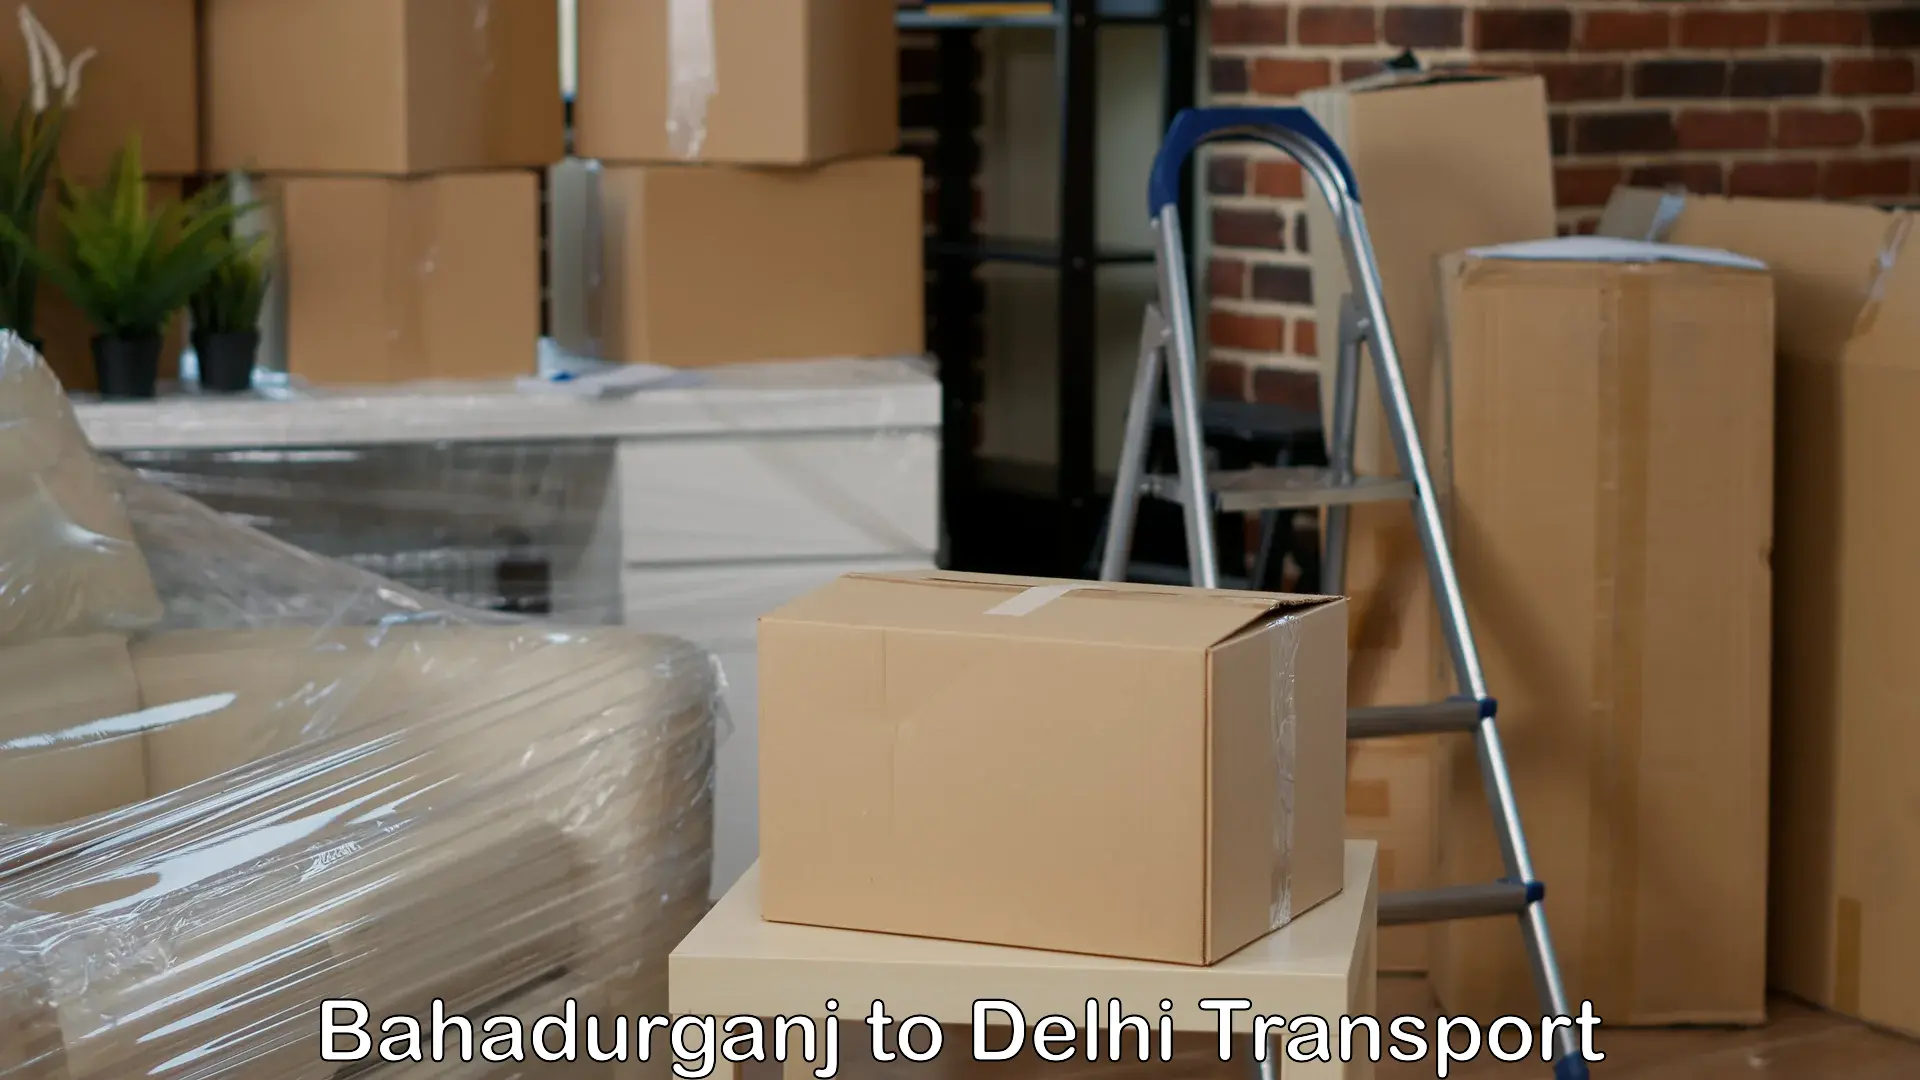 Air cargo transport services Bahadurganj to IIT Delhi